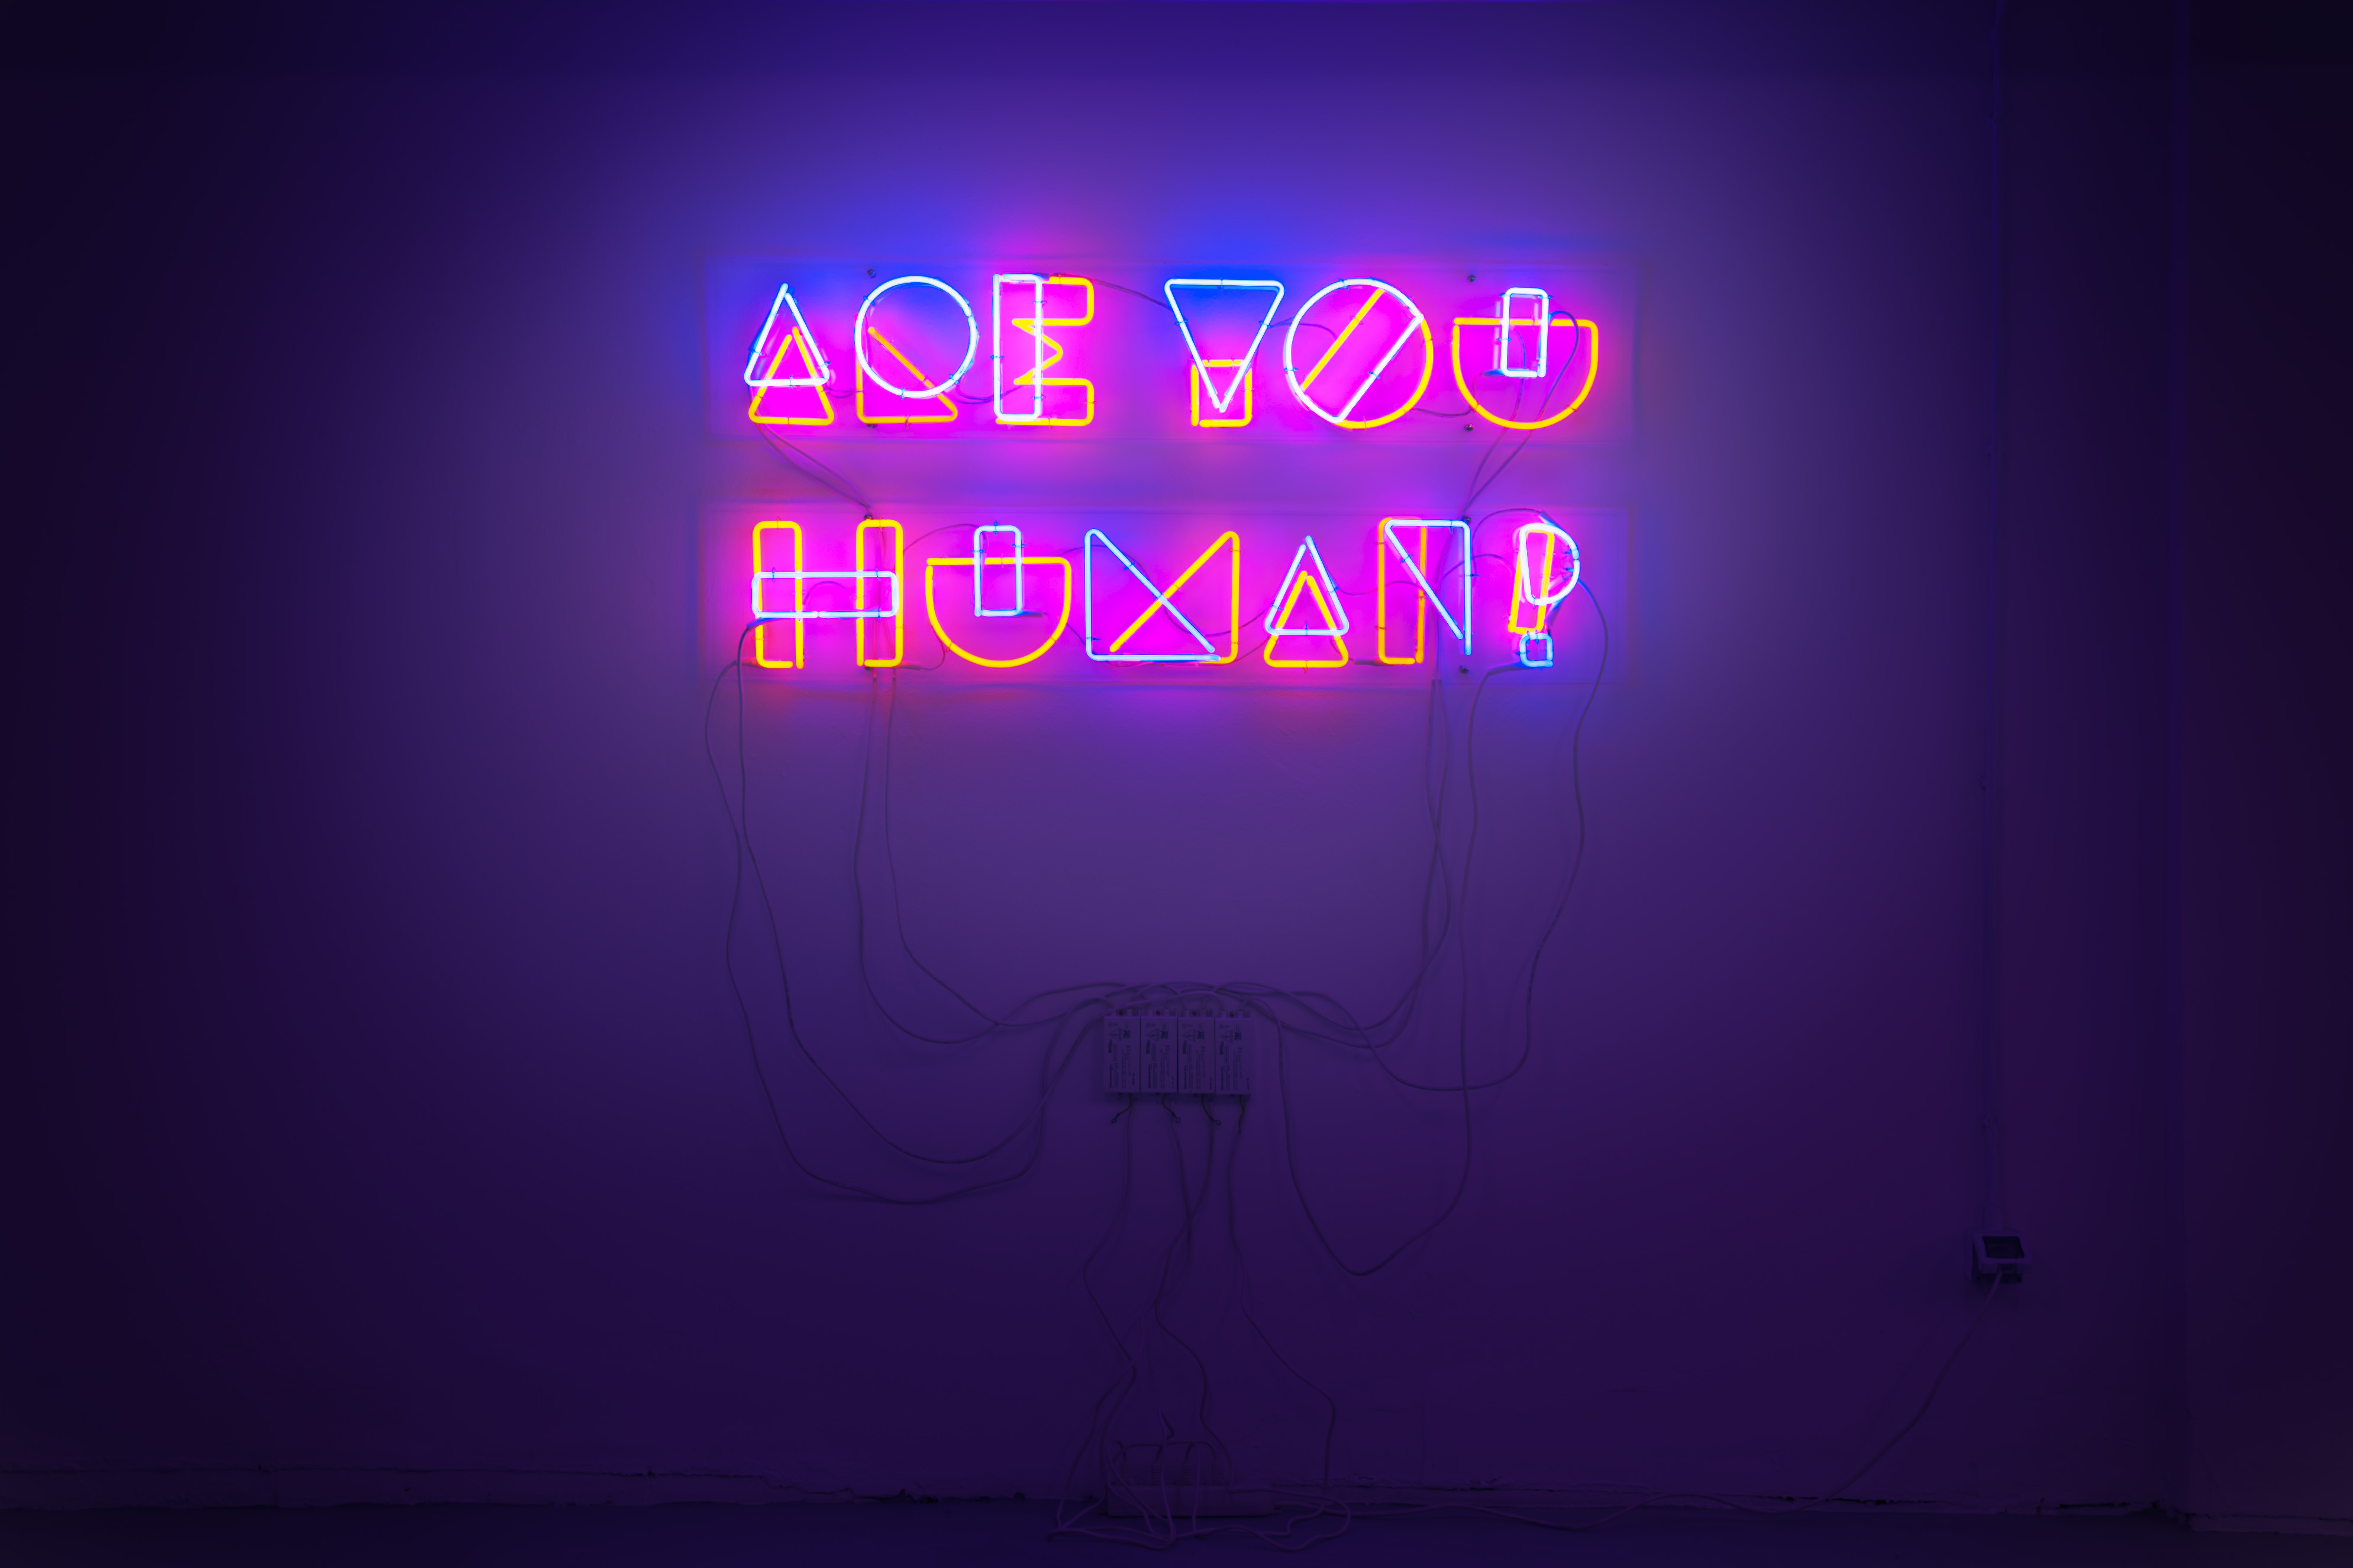 Marotta & Russo Are You Human? 2011, neon, 134 x 170 cm, collezione privata (photo Irene Fanizza)